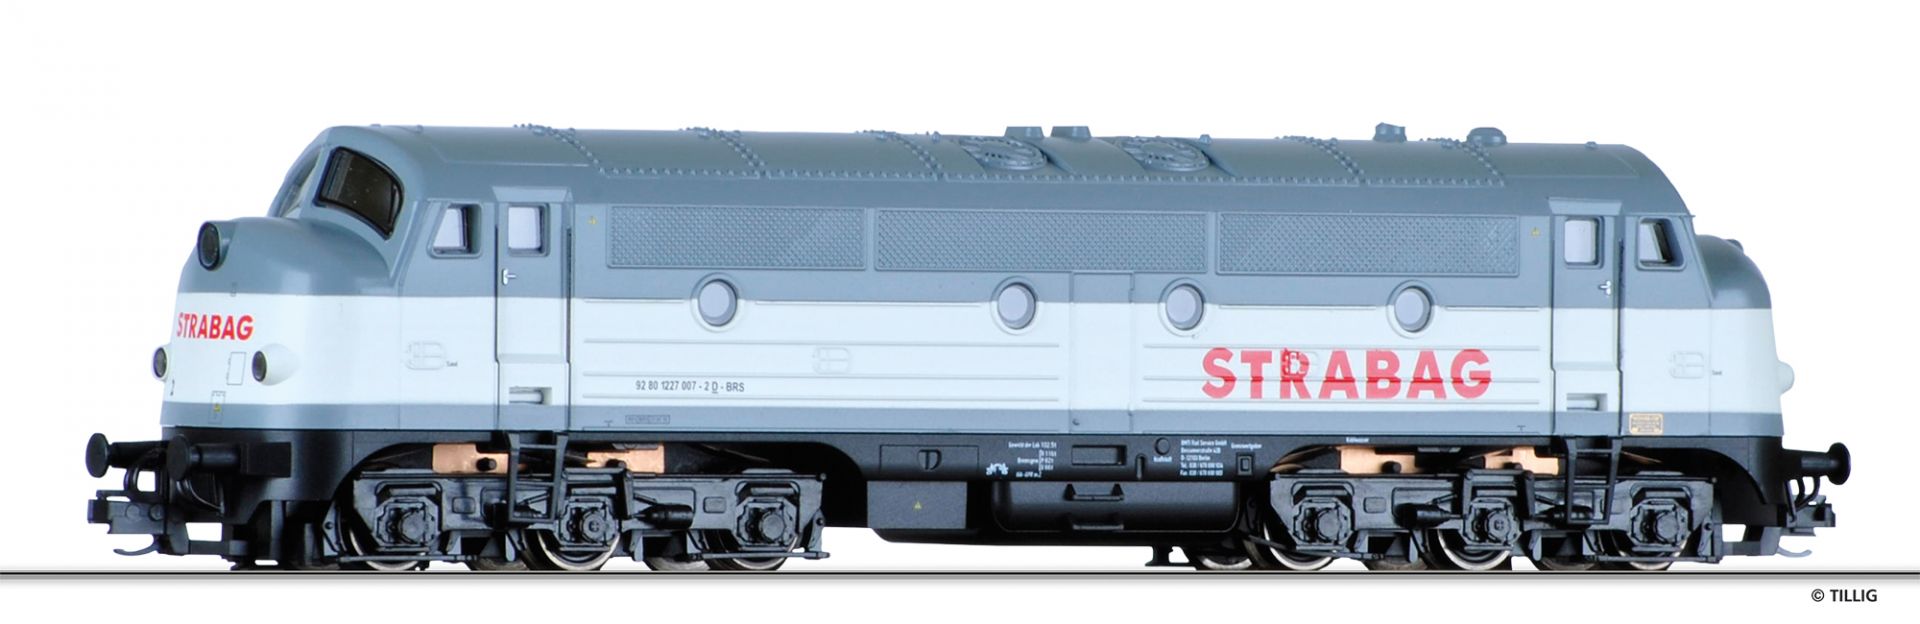 04540 | Diesellokomotive Rail Service -werksseitig ausverkauft-